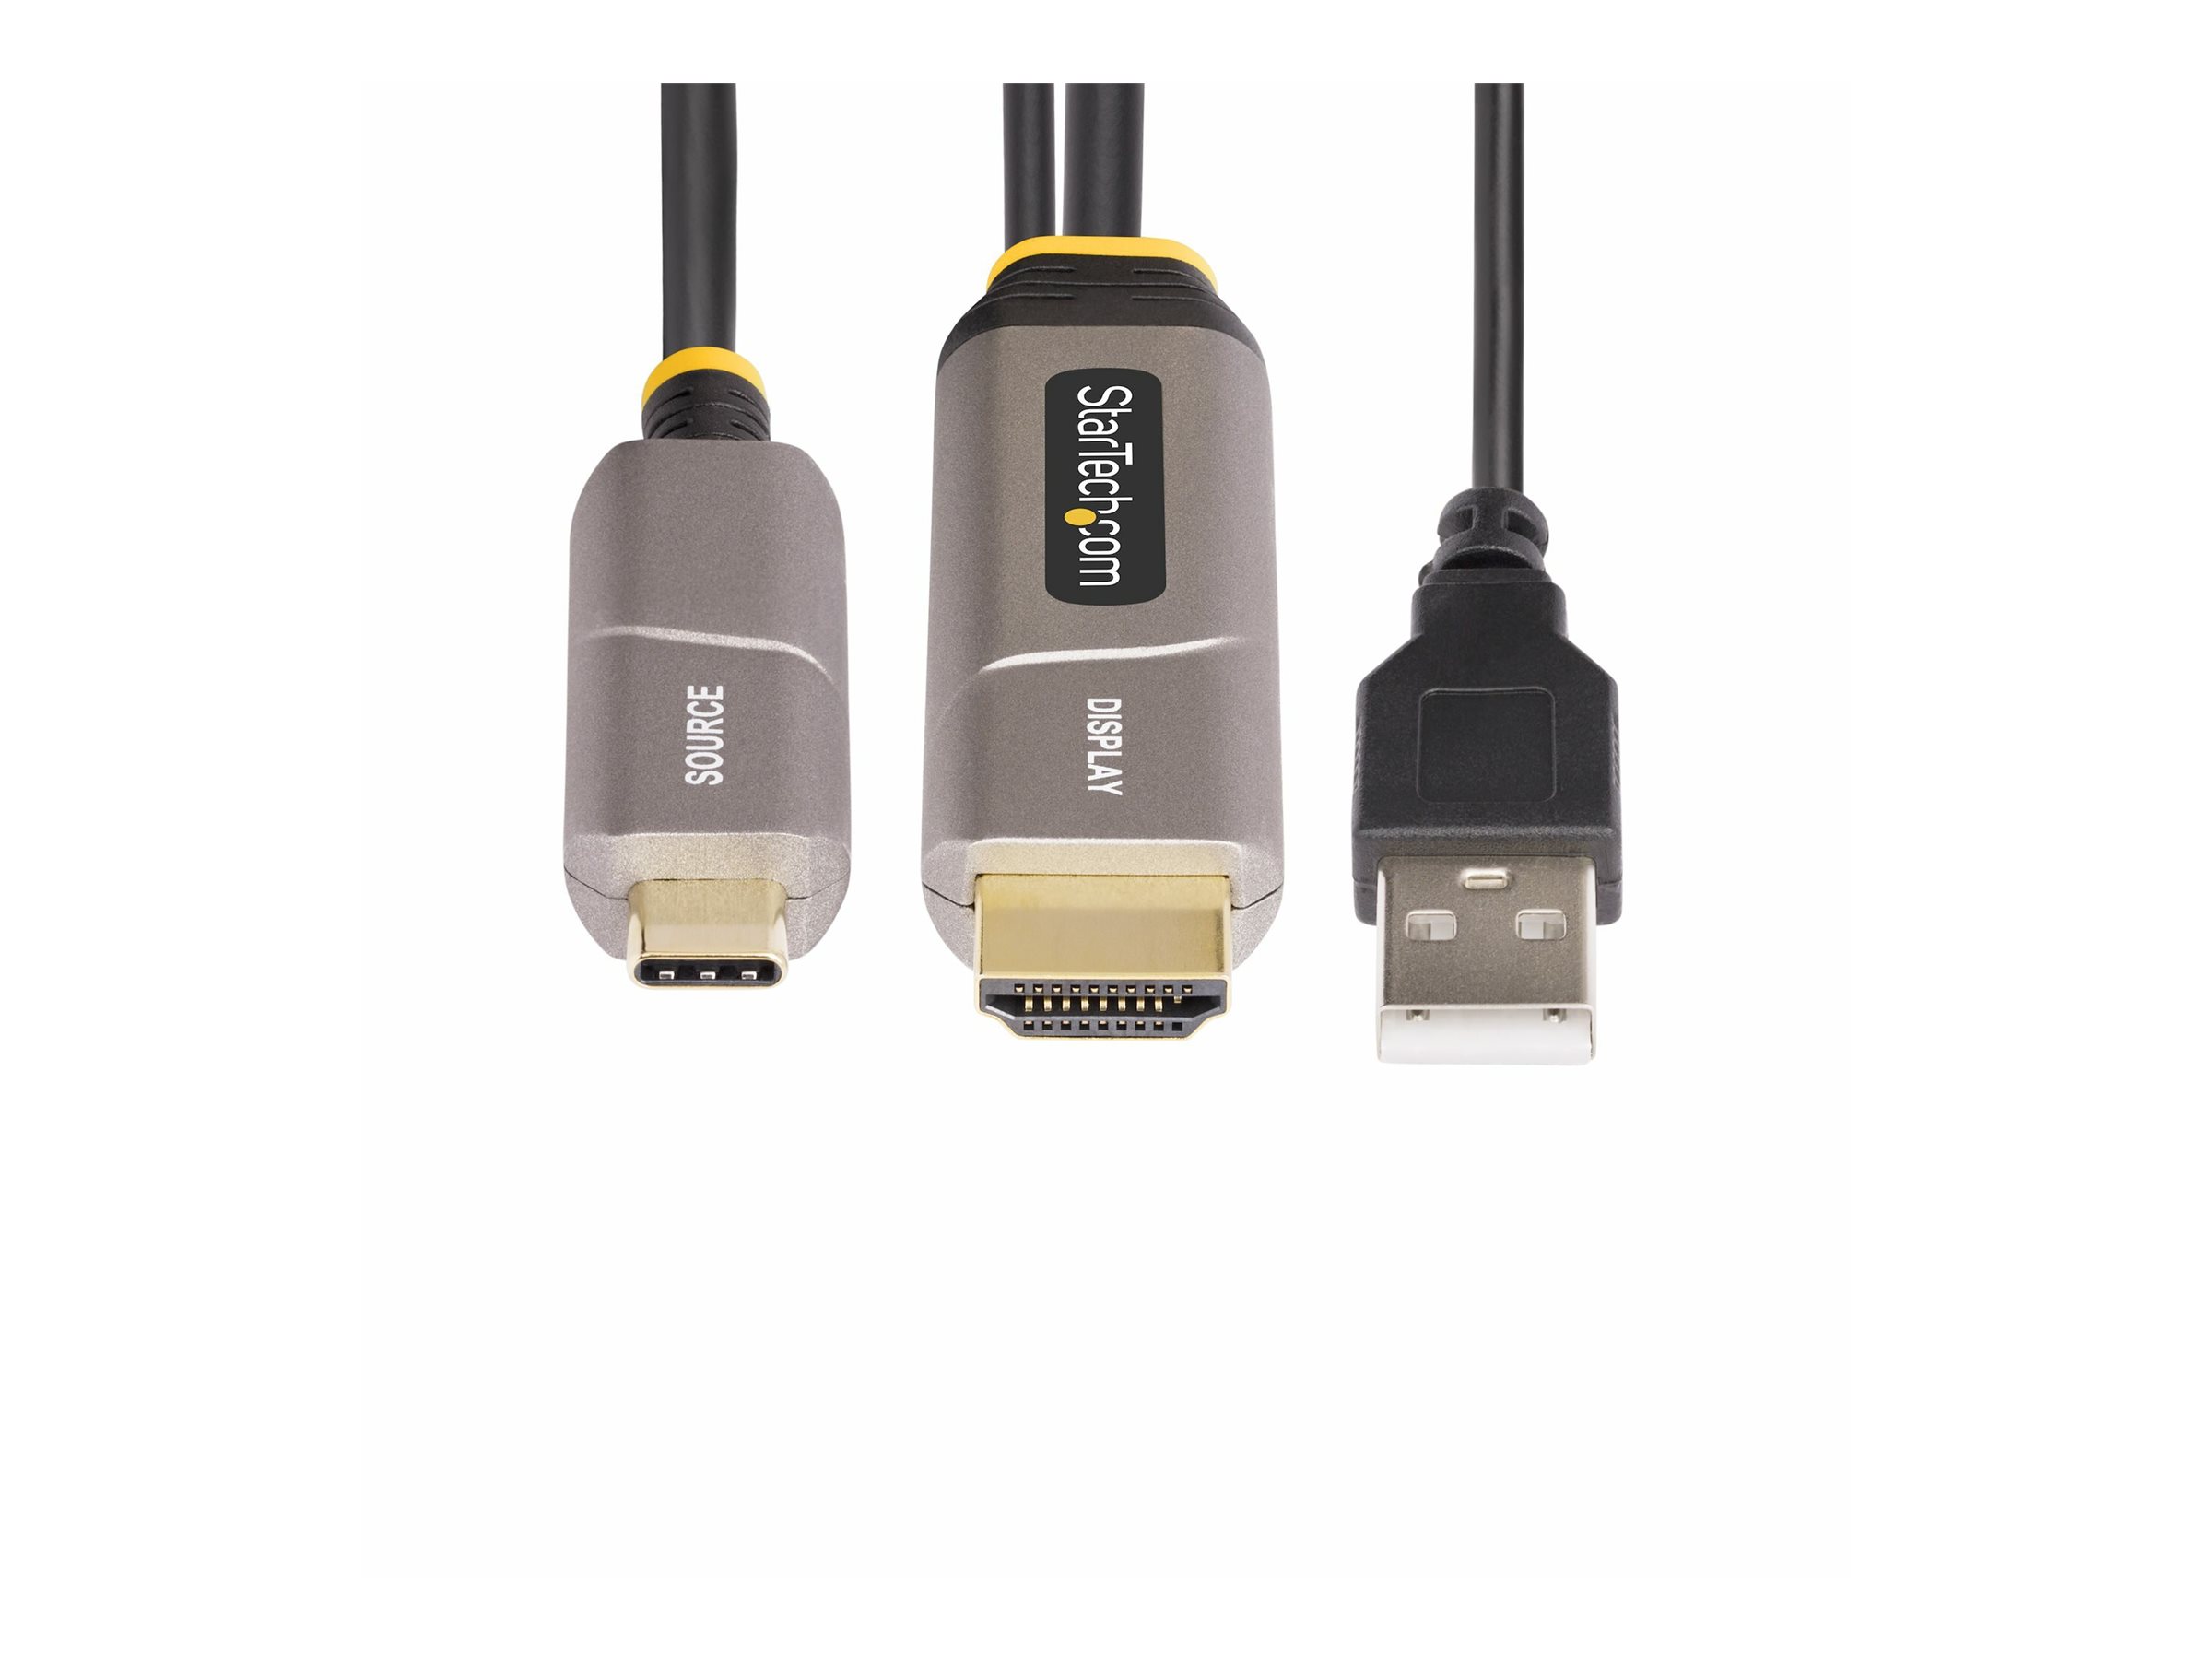 StarTech.com 50ft (15.2m) USB-C to HDMI 2.0 Active Optical Cable, 4K 60Hz - Câble HDMI - 24 pin USB-C mâle pour HDMI, USB (alimentation uniquement) mâle - 15.2 m - blindé/fibre optique - noir - actif, Active Optical Cable (AOC), Unidirectionnel, support pour 4K60Hz (3840 x 2160) - 146B-USBC-HDMI4K-AOC - Accessoires pour systèmes audio domestiques